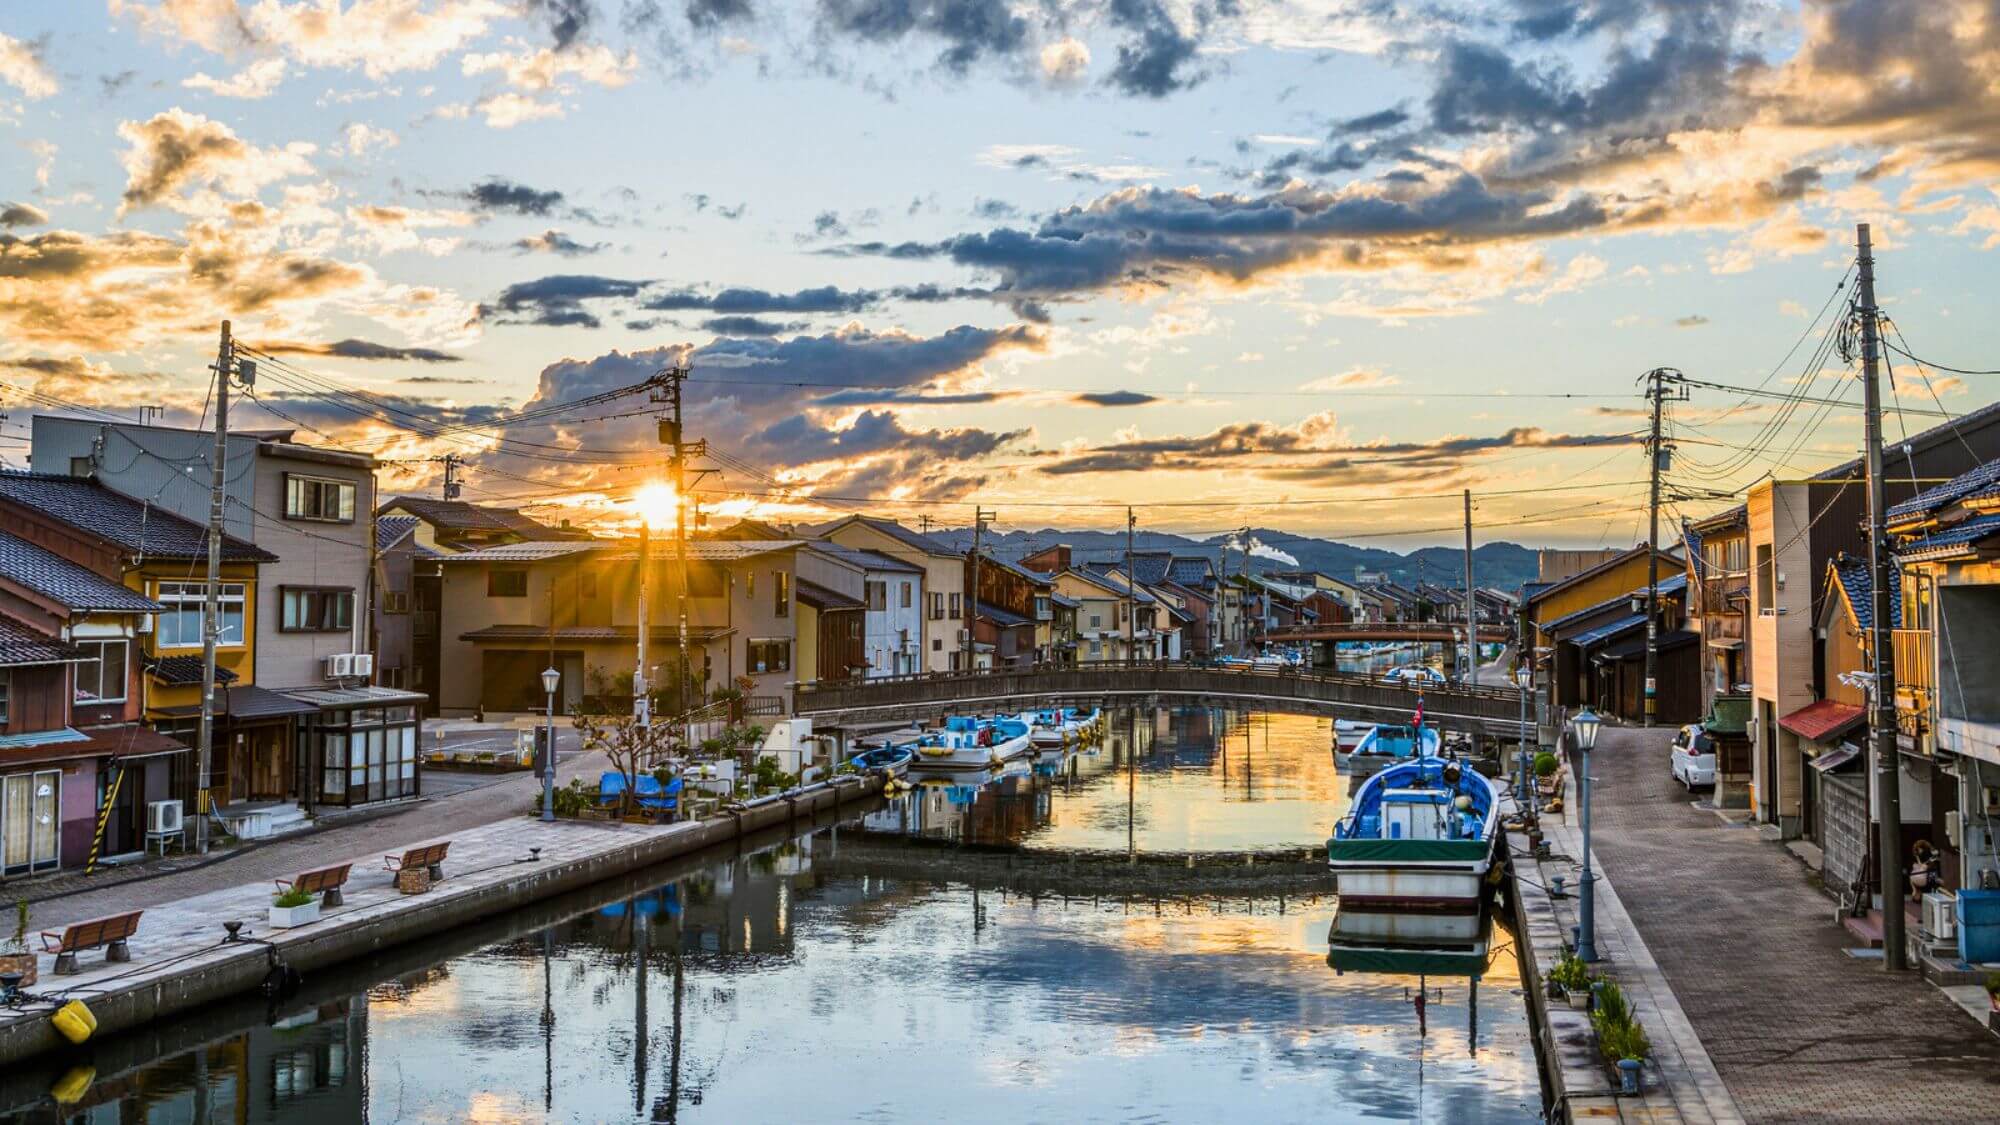 【新湊市内川】日本のヴェニスと呼ばれる漁師町です。映画やドラマのロケ地としても注目されています。